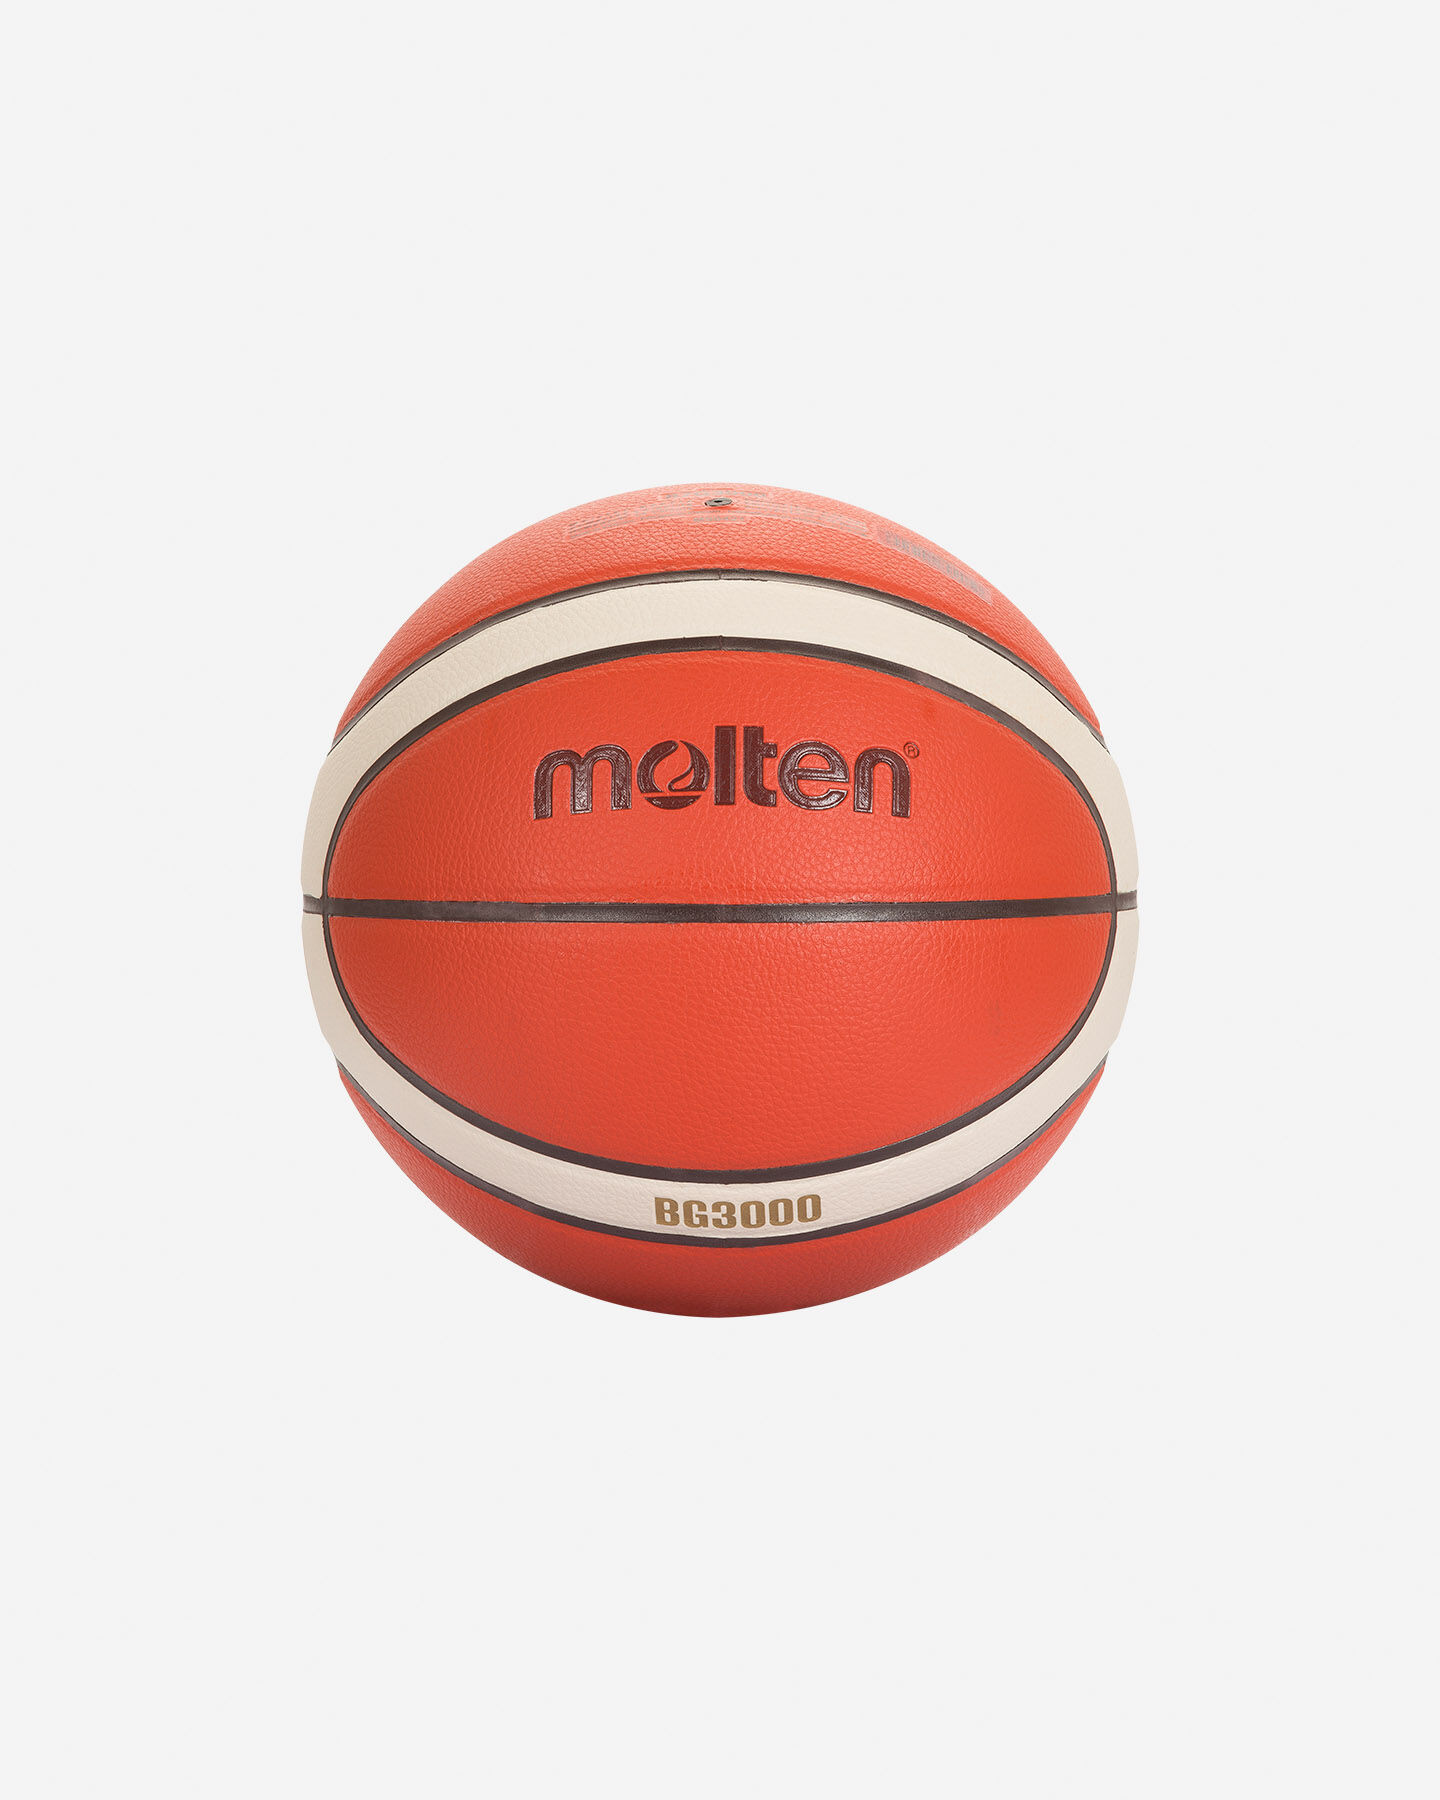  Pallone basket MOLTEN B7G3000 S5339965|UNI|UNI scatto 1